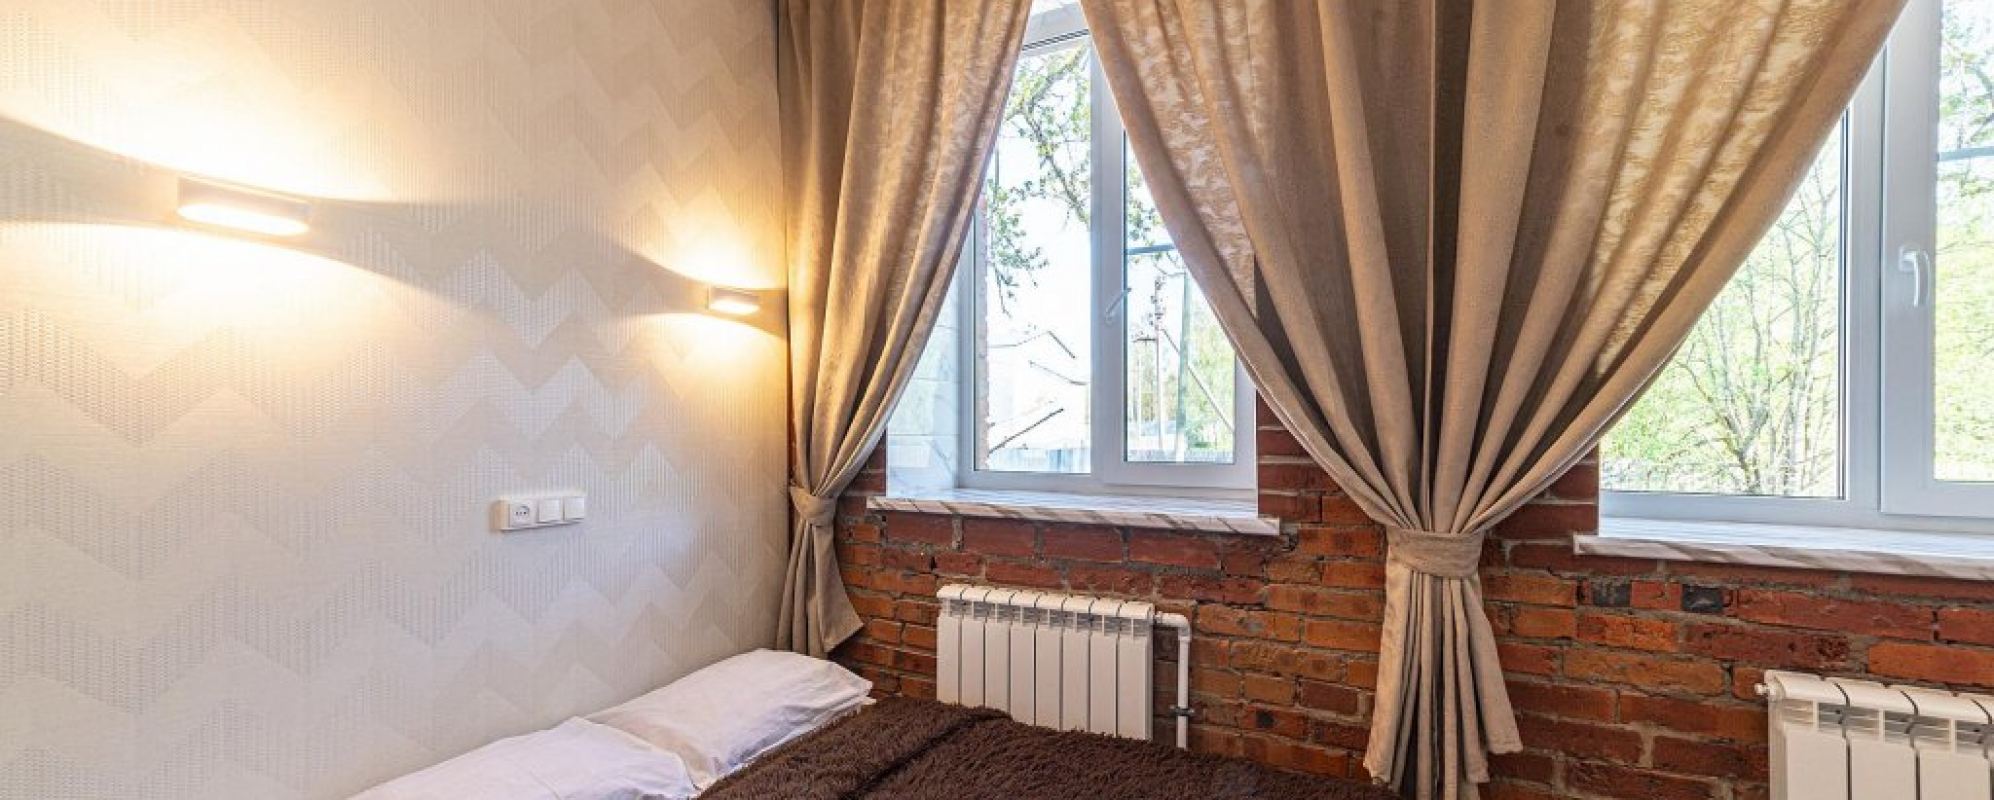 Фотографии гостевого дома Samsonov Hotels в д. Ивановка 14